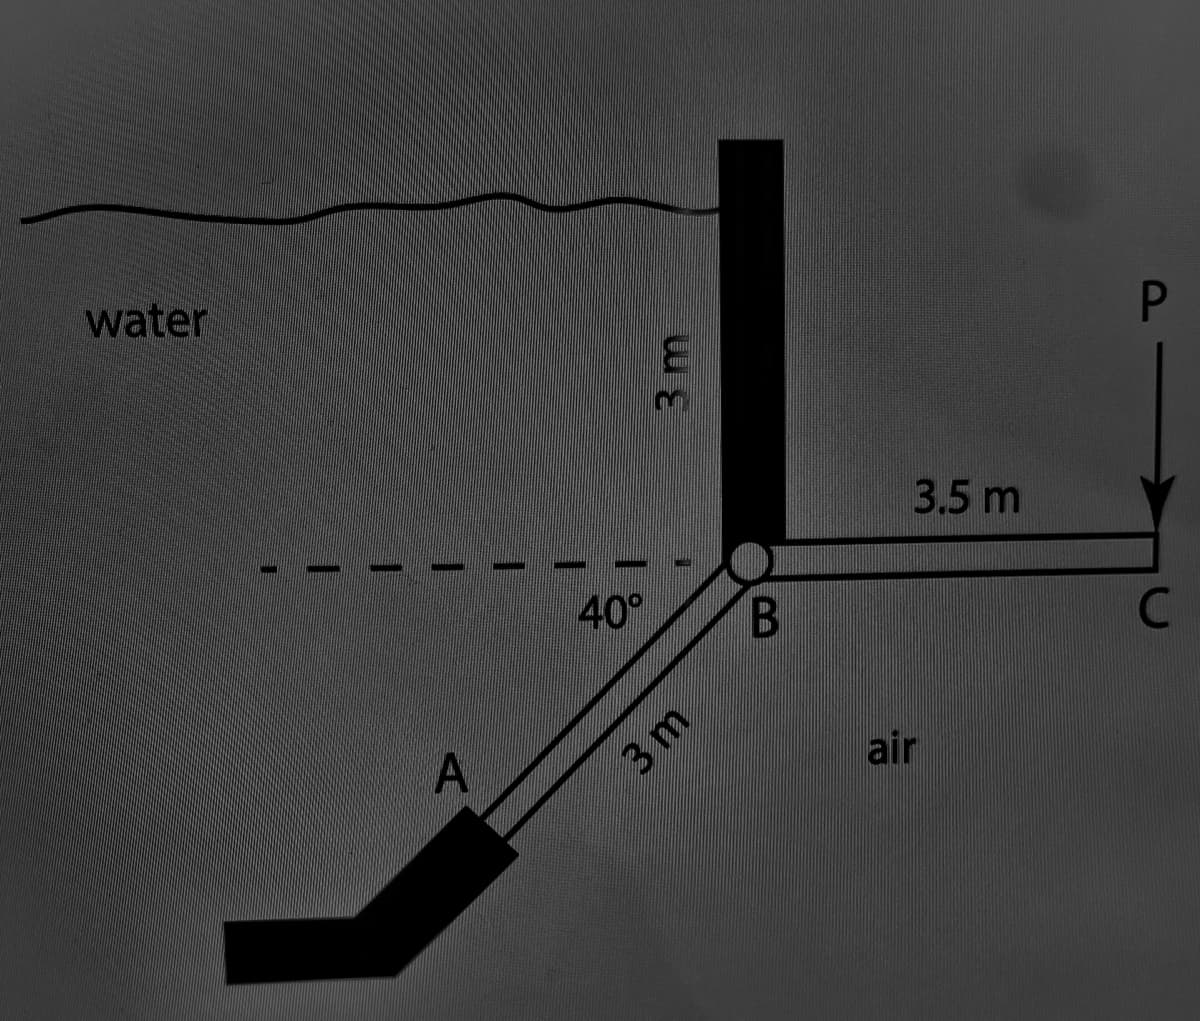 water
A
40°
3m
3 m
B
3.5 m
air
P
C